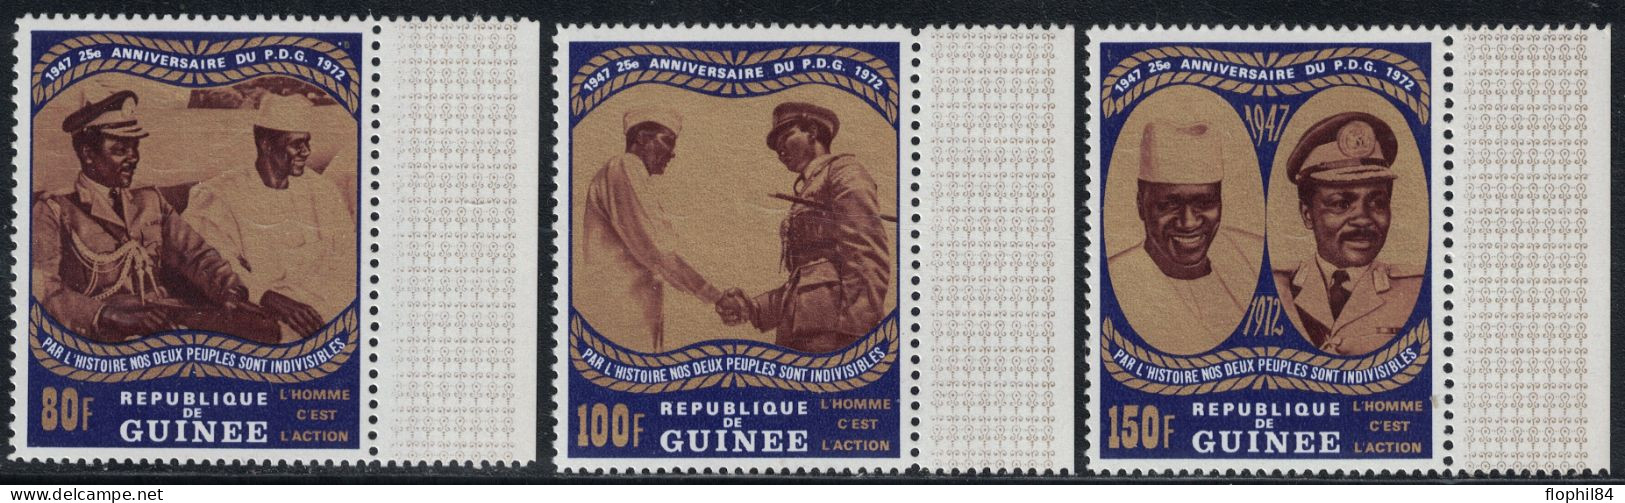 GUINEE REPUBLIQUE - NON EMIS - N°483A à 485A - SERIE DE 3 VALEURS NEUVES BORD DE FEUILLE - SANS TRACE DE CHARNIERE. - Guinee (1958-...)